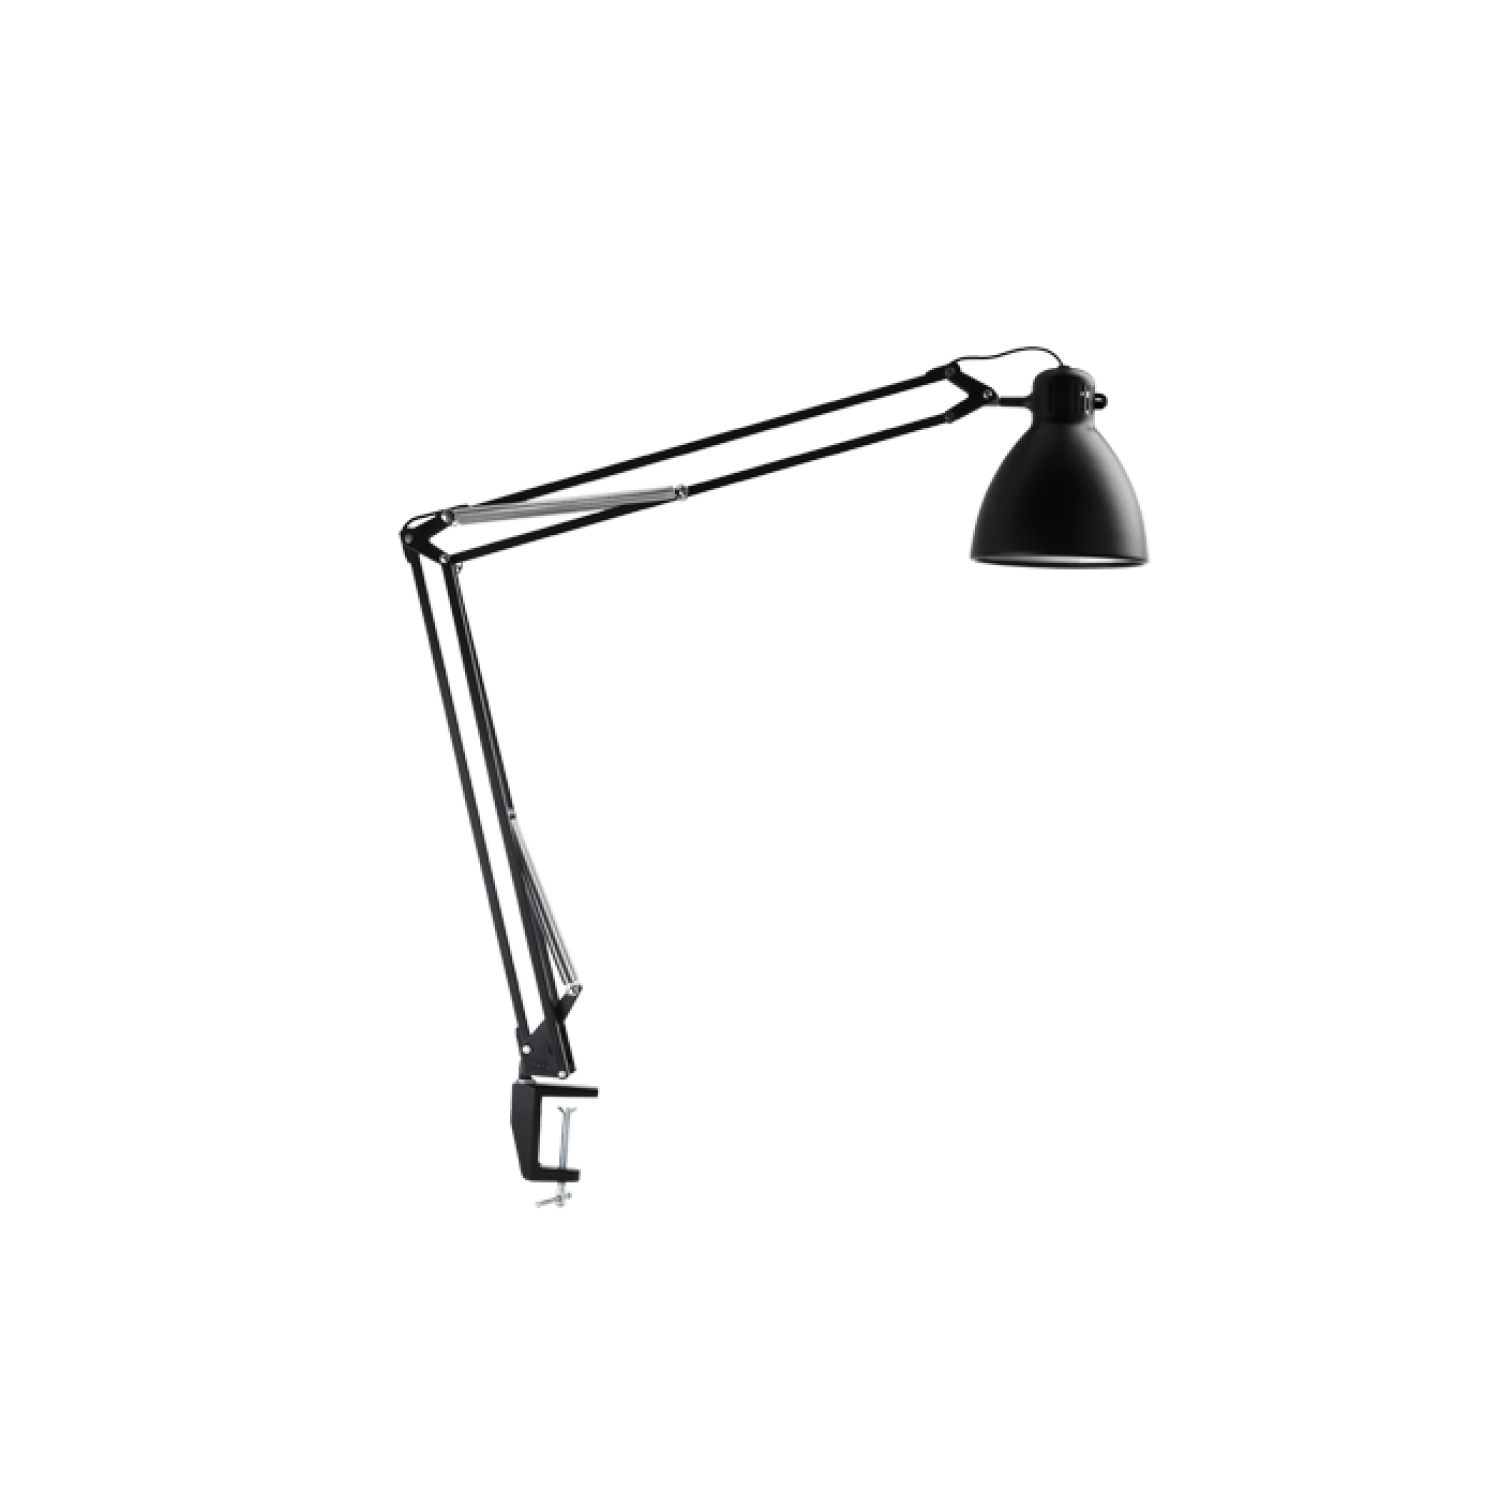 Horzel Sterkte reptielen Luxo L-1 LED task light with edge clamp, Black Luxo-Lighting.com